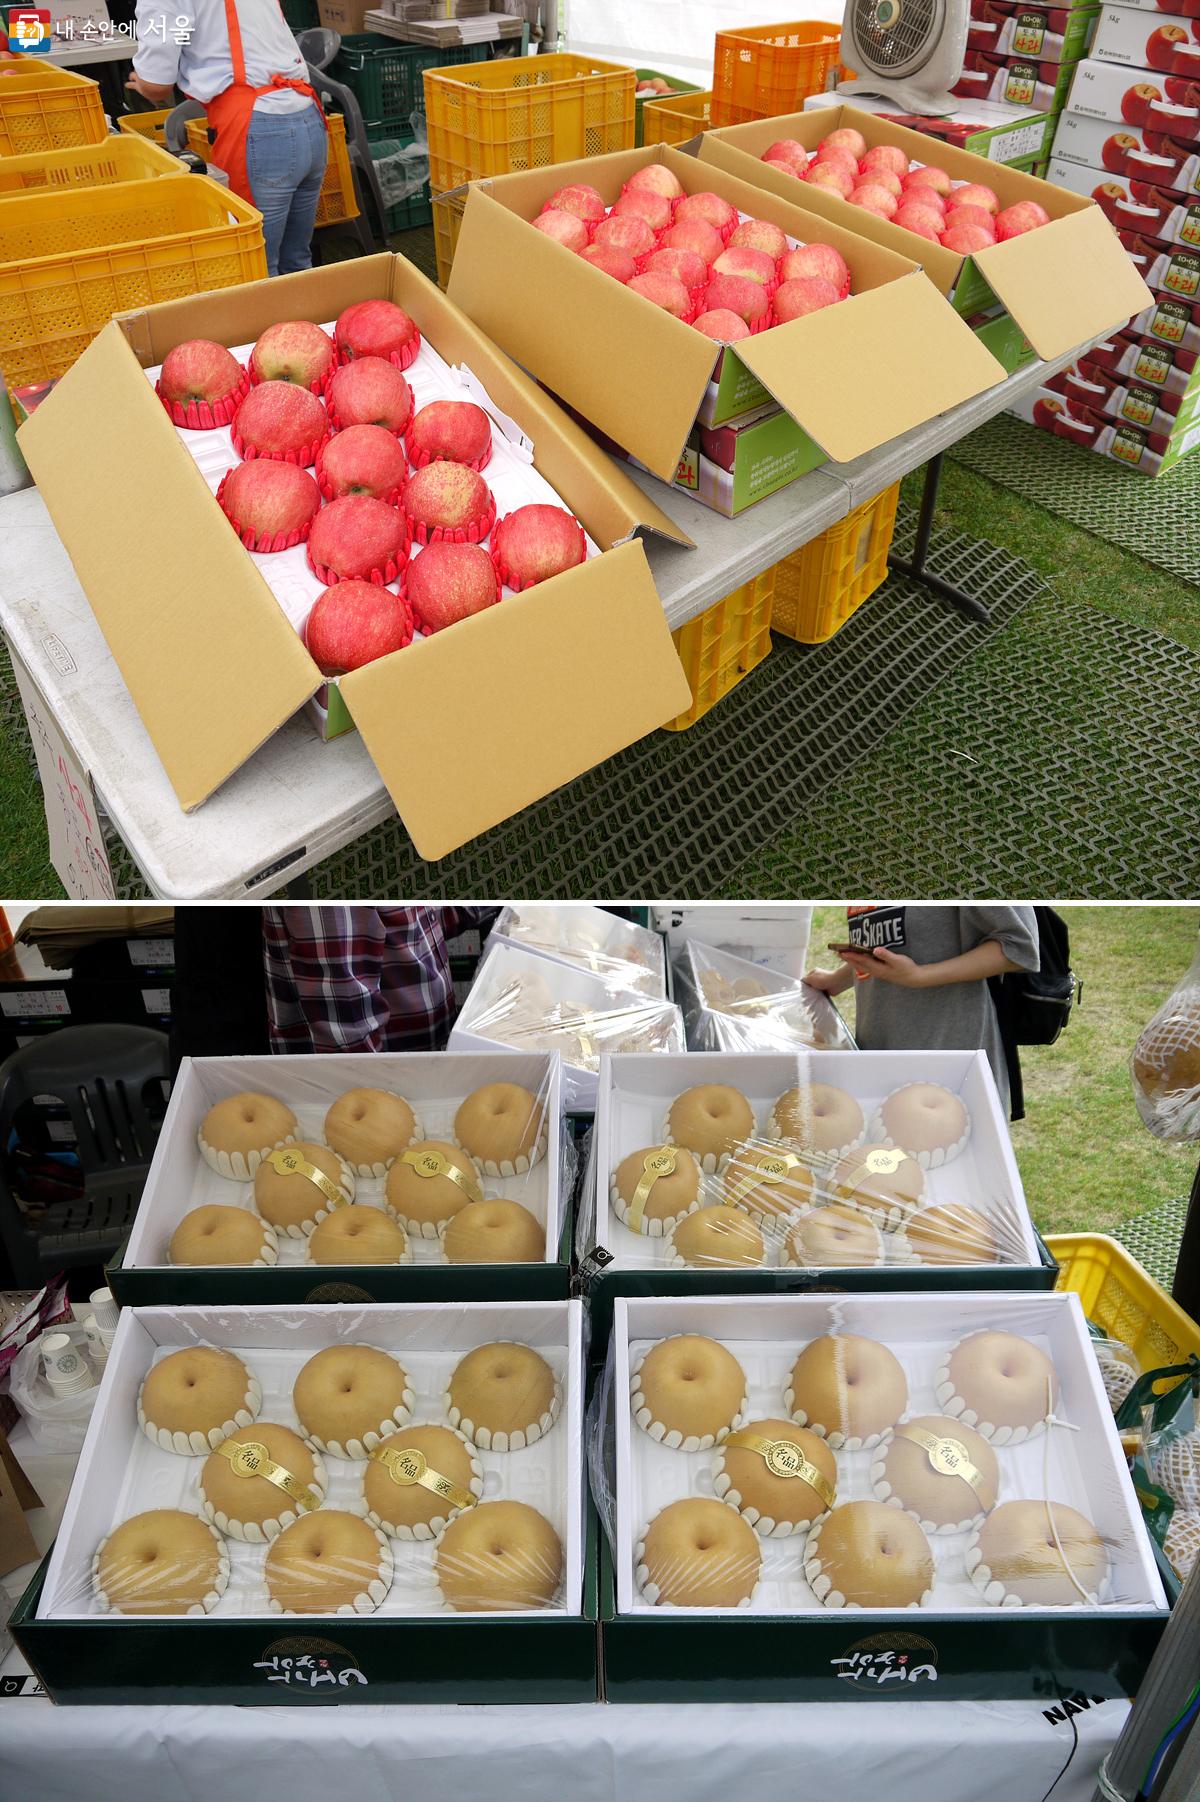 추석 선물용으로 구입하기 좋은 다양한 과일을 판매했다. 충북 충주시의 홍로 사과(위), 전남 나주시의 배(아래) ©최윤영